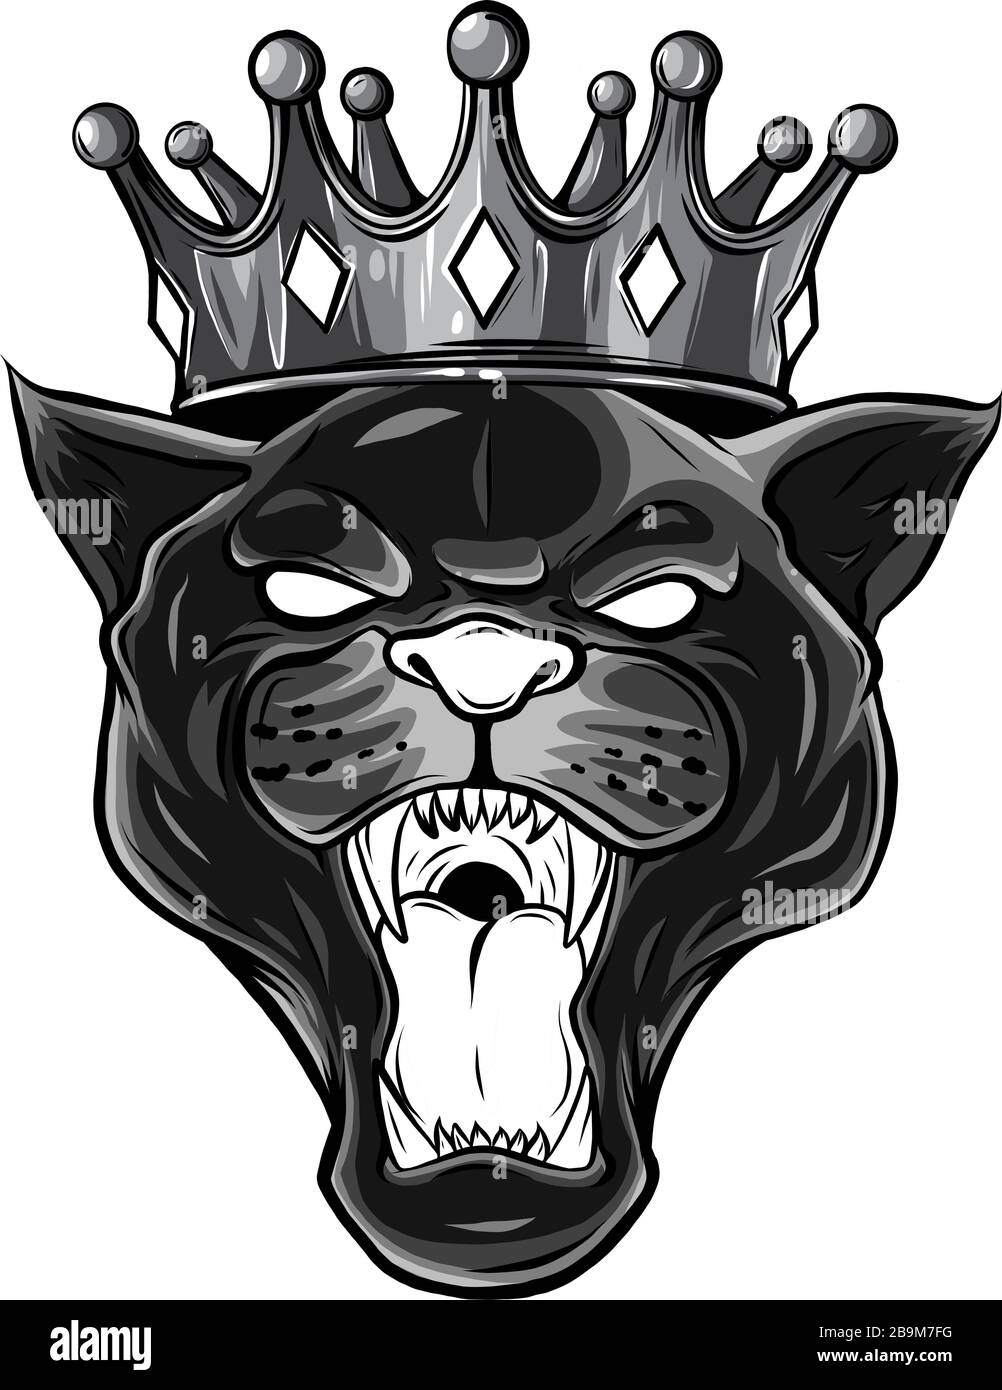 Panther noir monochromatique avec couronne sur sa tête et bouche ouverte, sur fond blanc Illustration de Vecteur